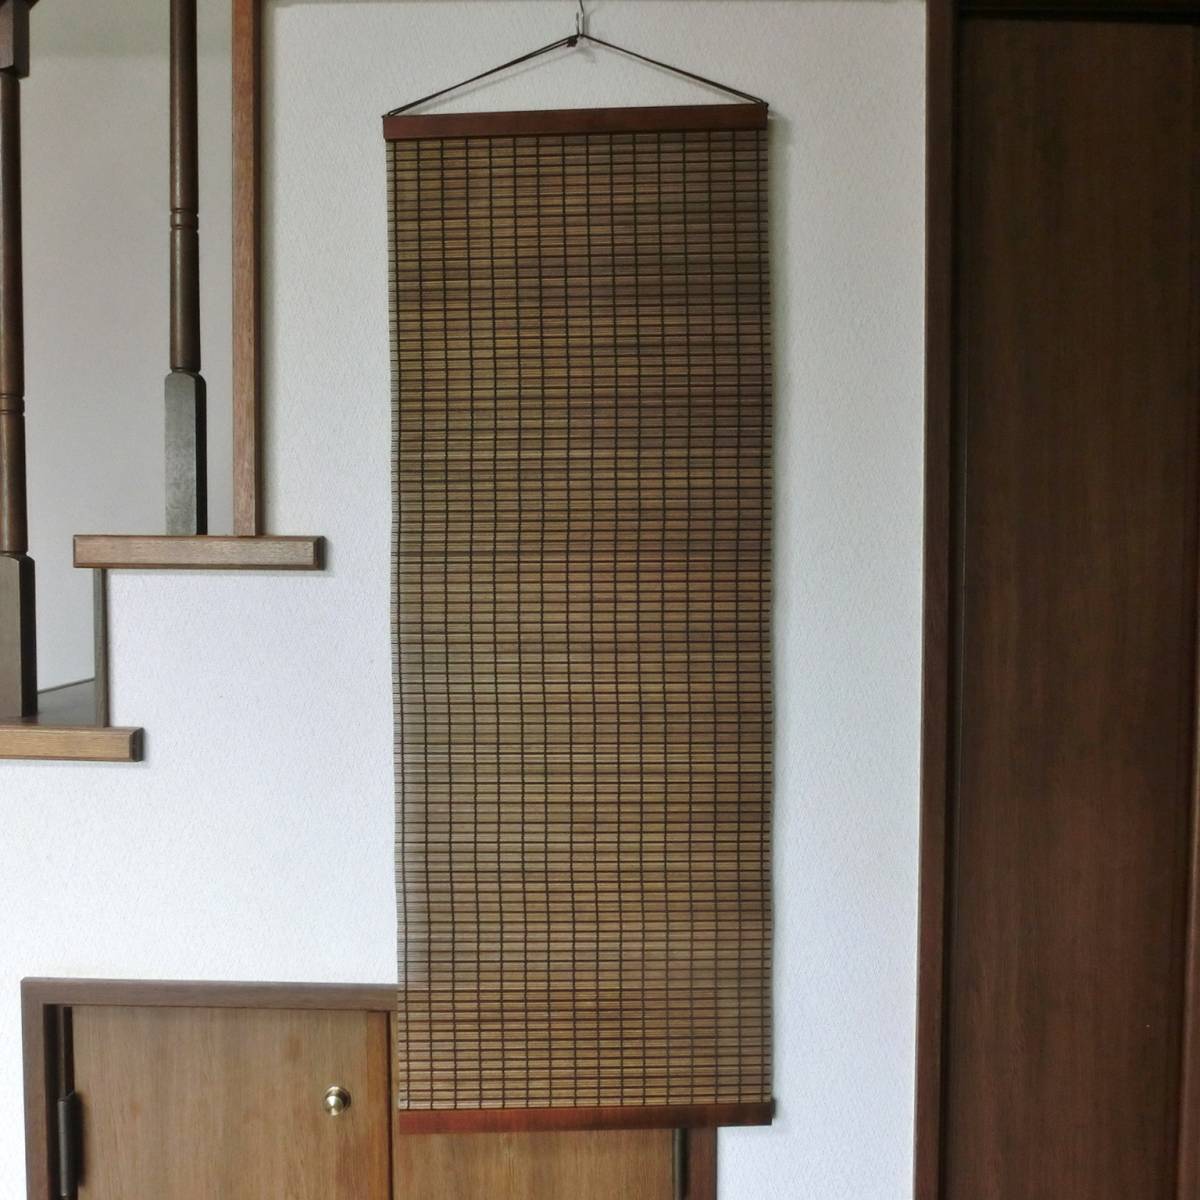 Деревянный гобелен Стильный деревянный гобелен в японском стиле 1 Ширина 40см Длина 110см, ручная работа, интерьер, разные товары, панель, гобелен